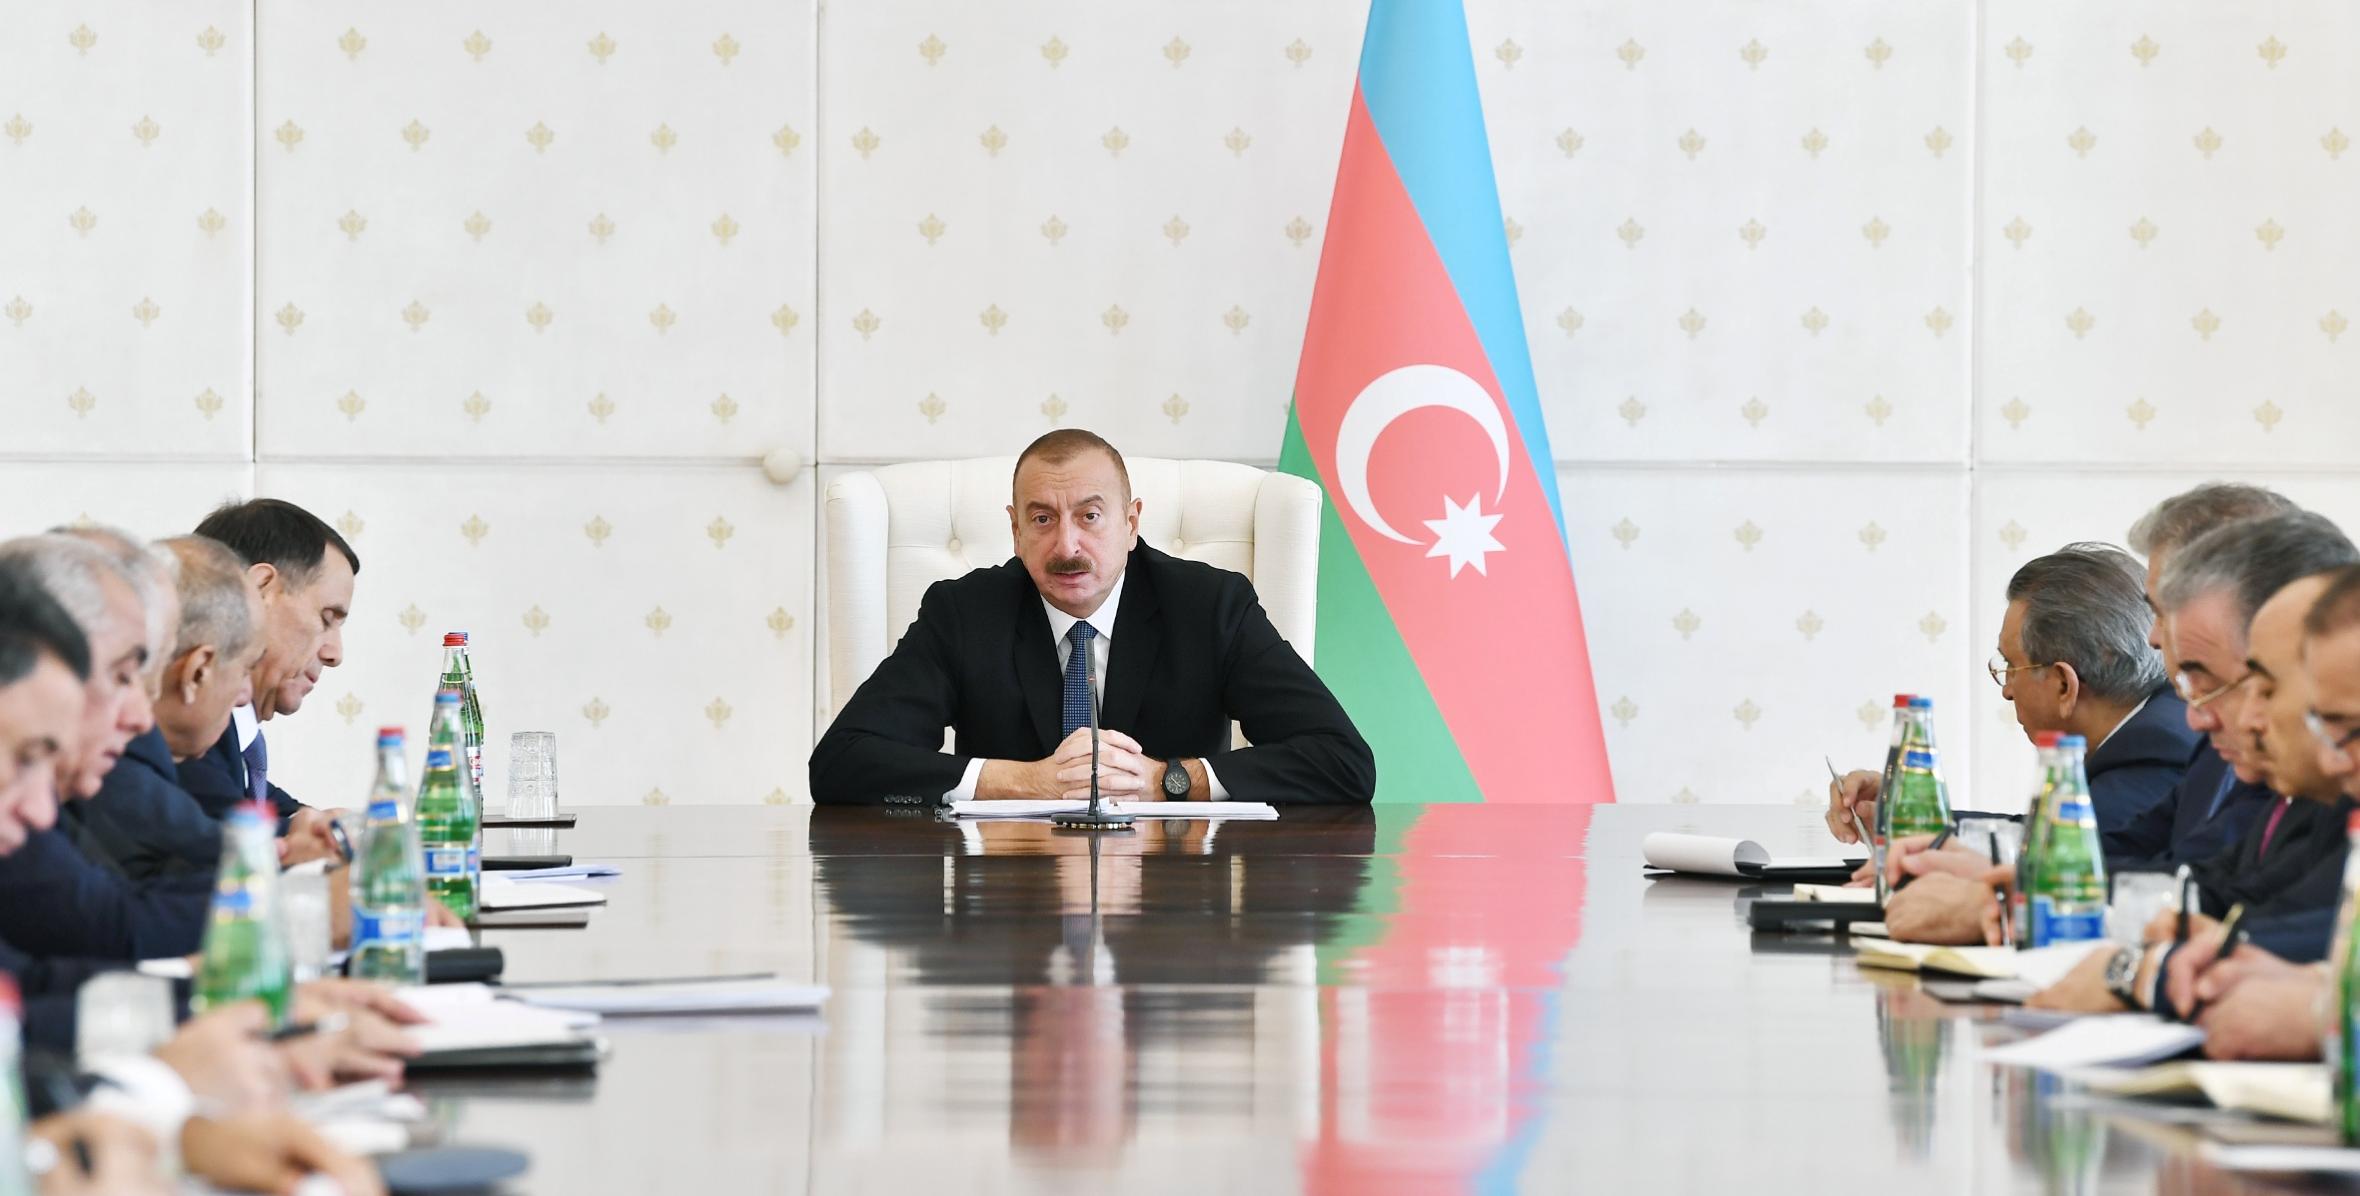 Под председательством Ильхама Алиева состоялось заседание Кабинета Министров, посвященное итогам социально-экономического развития за девять месяцев 2018 года и предстоящим задачам